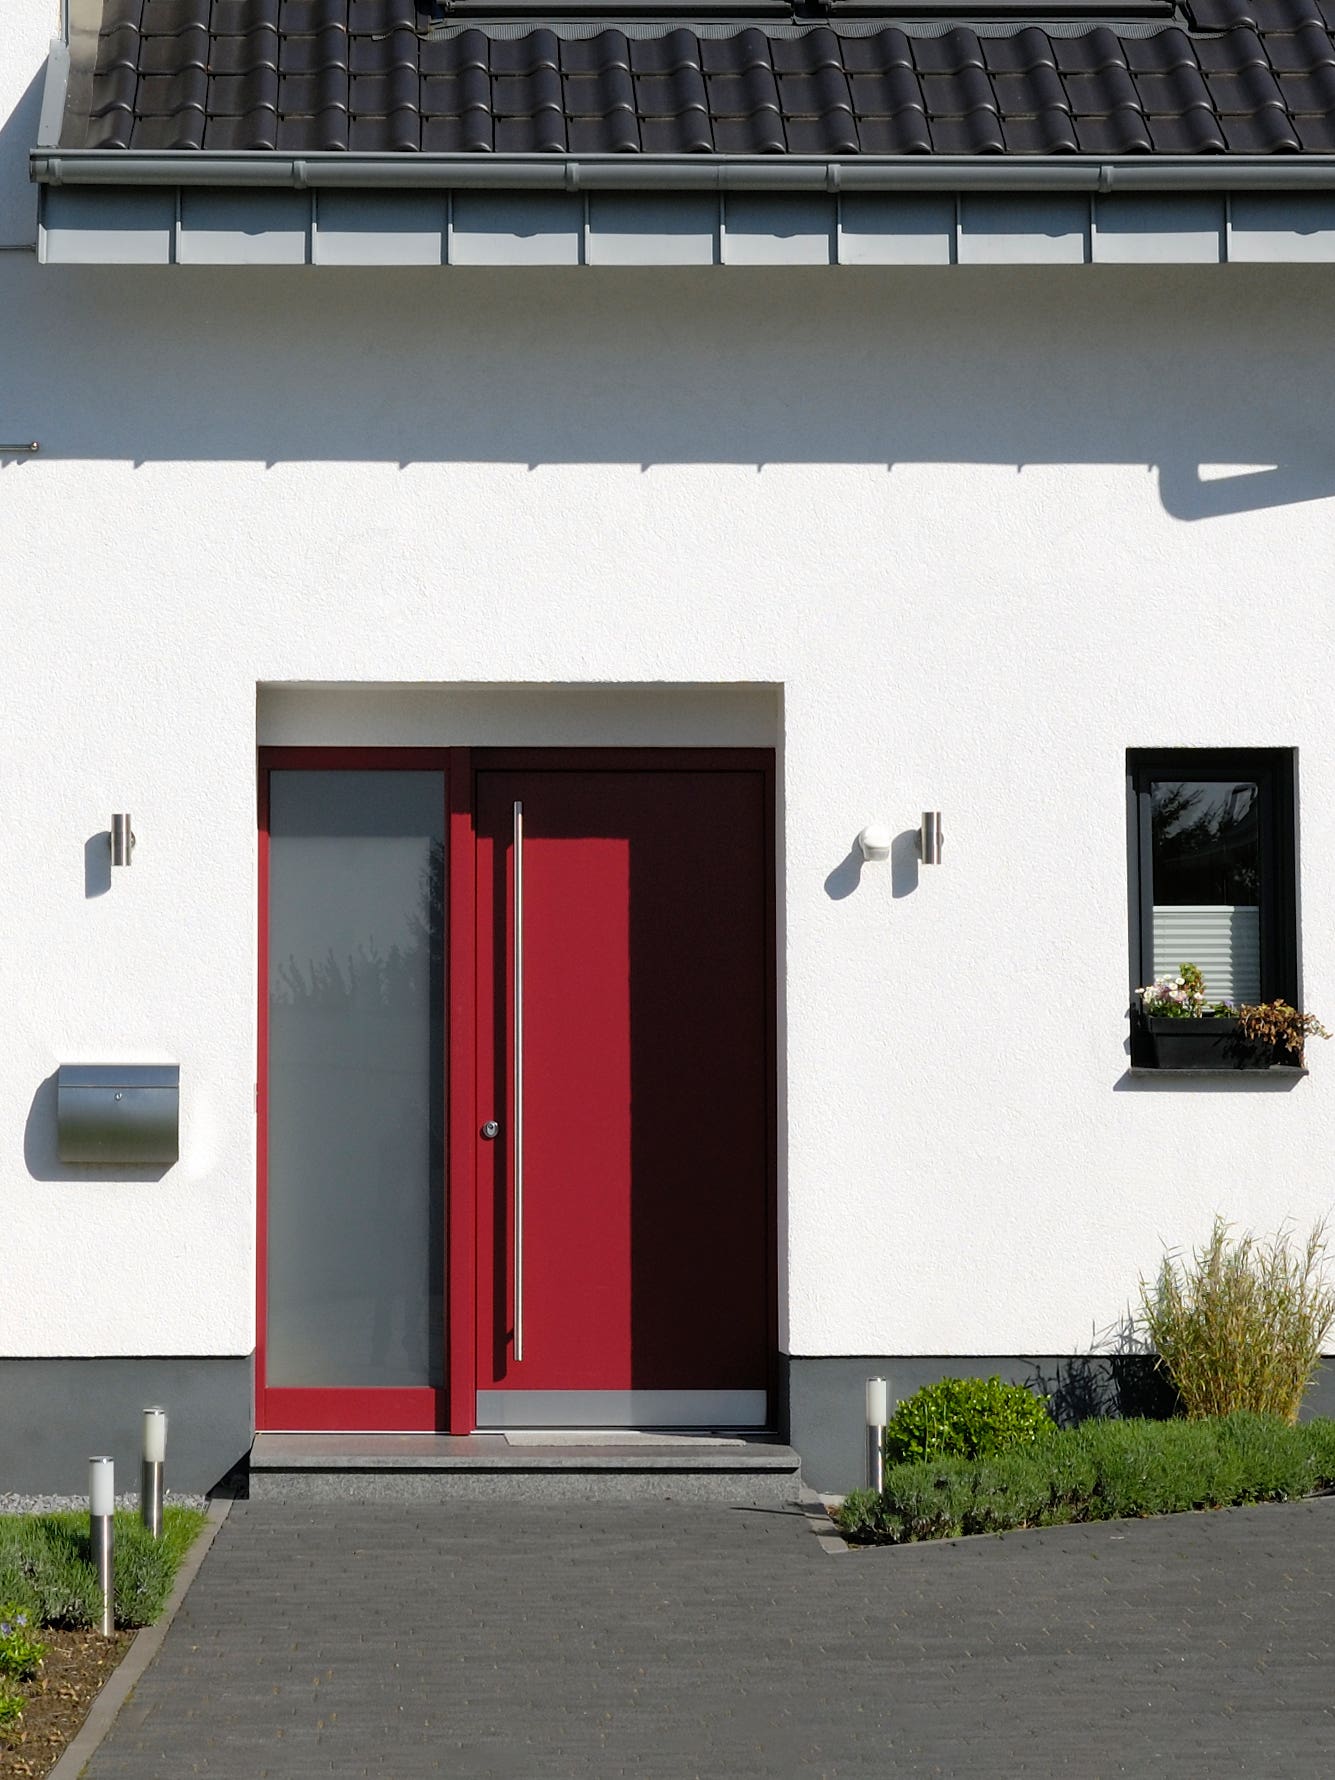 whtie house with red door